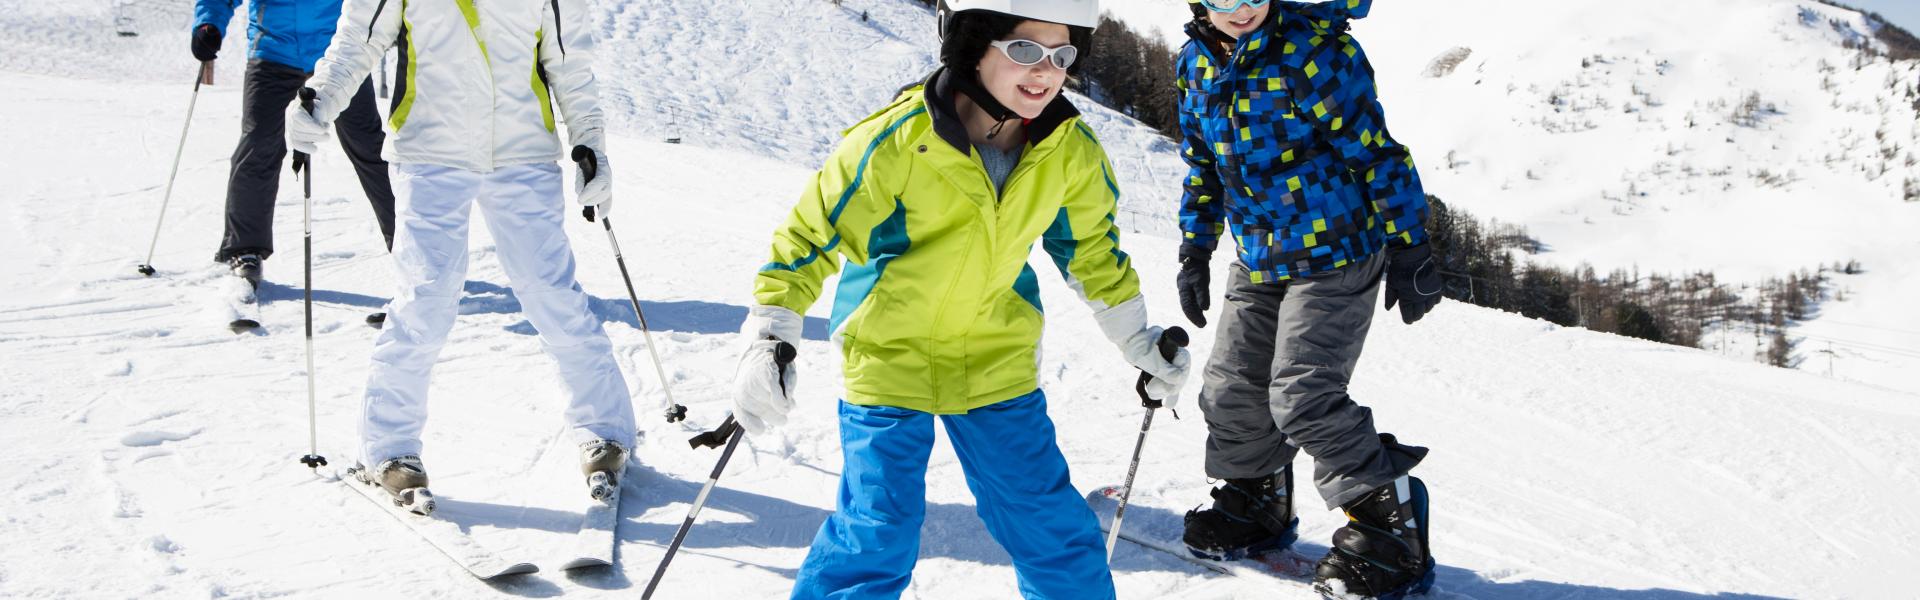 Happy Family skiing outdoors